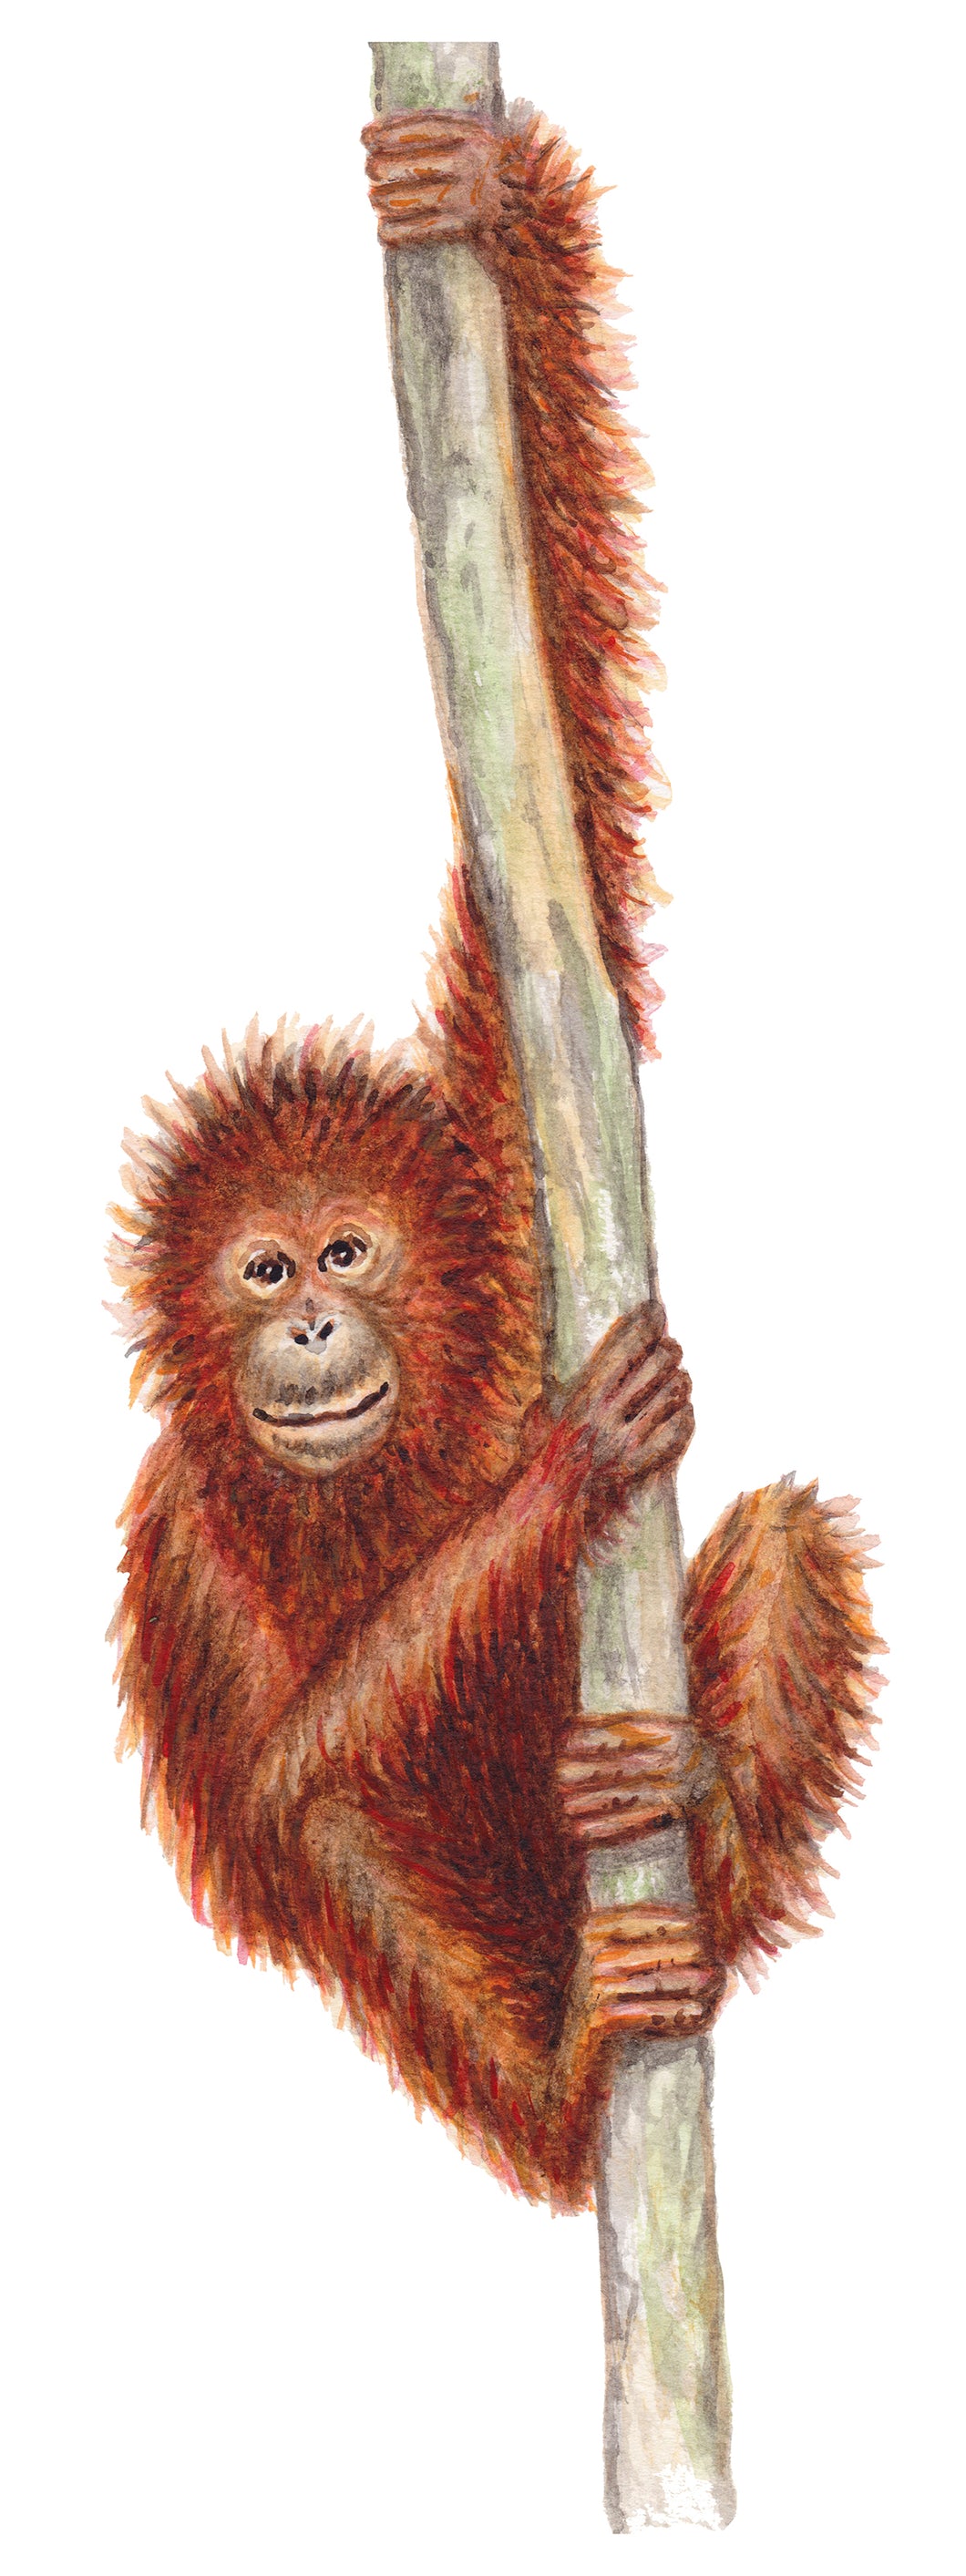 Wallsticker monkey